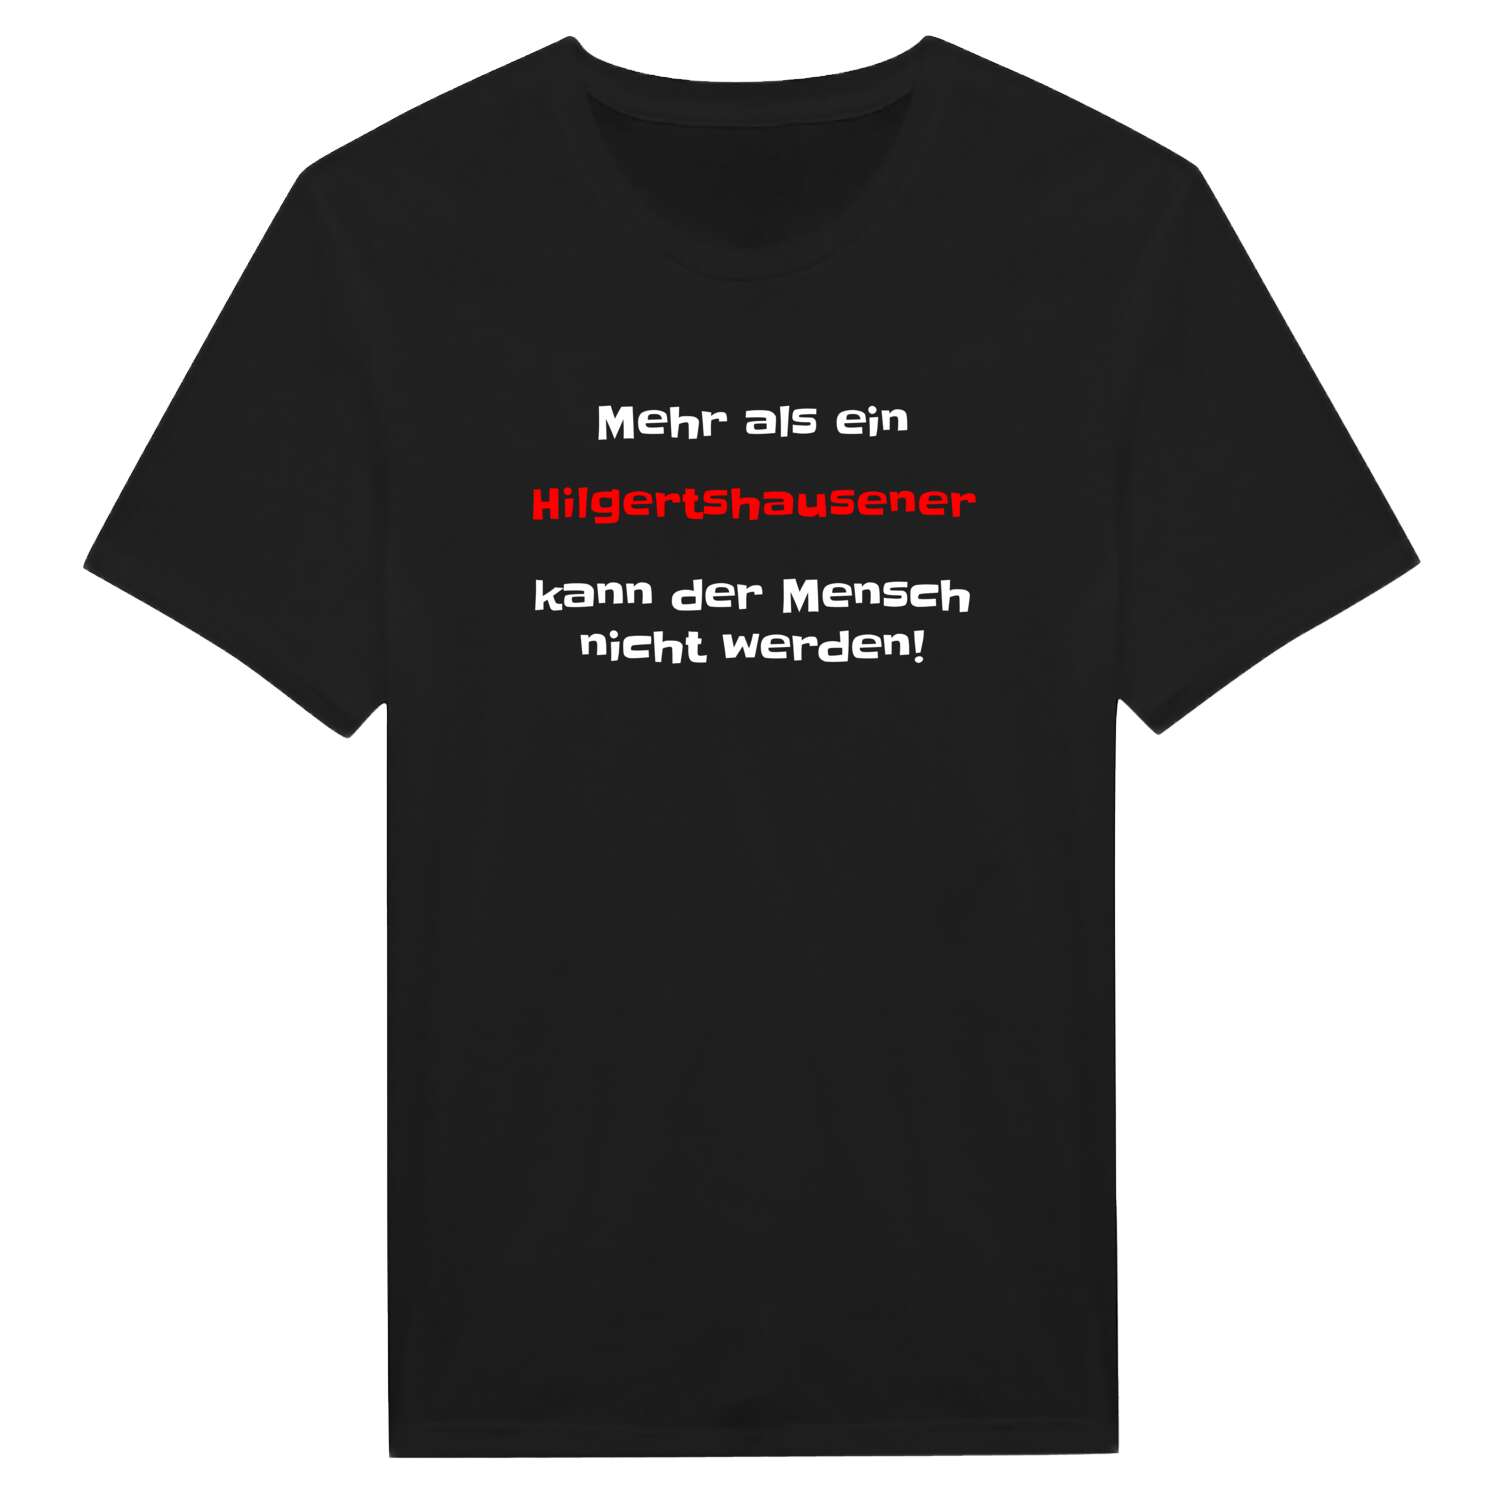 Hilgertshausen T-Shirt »Mehr als ein«